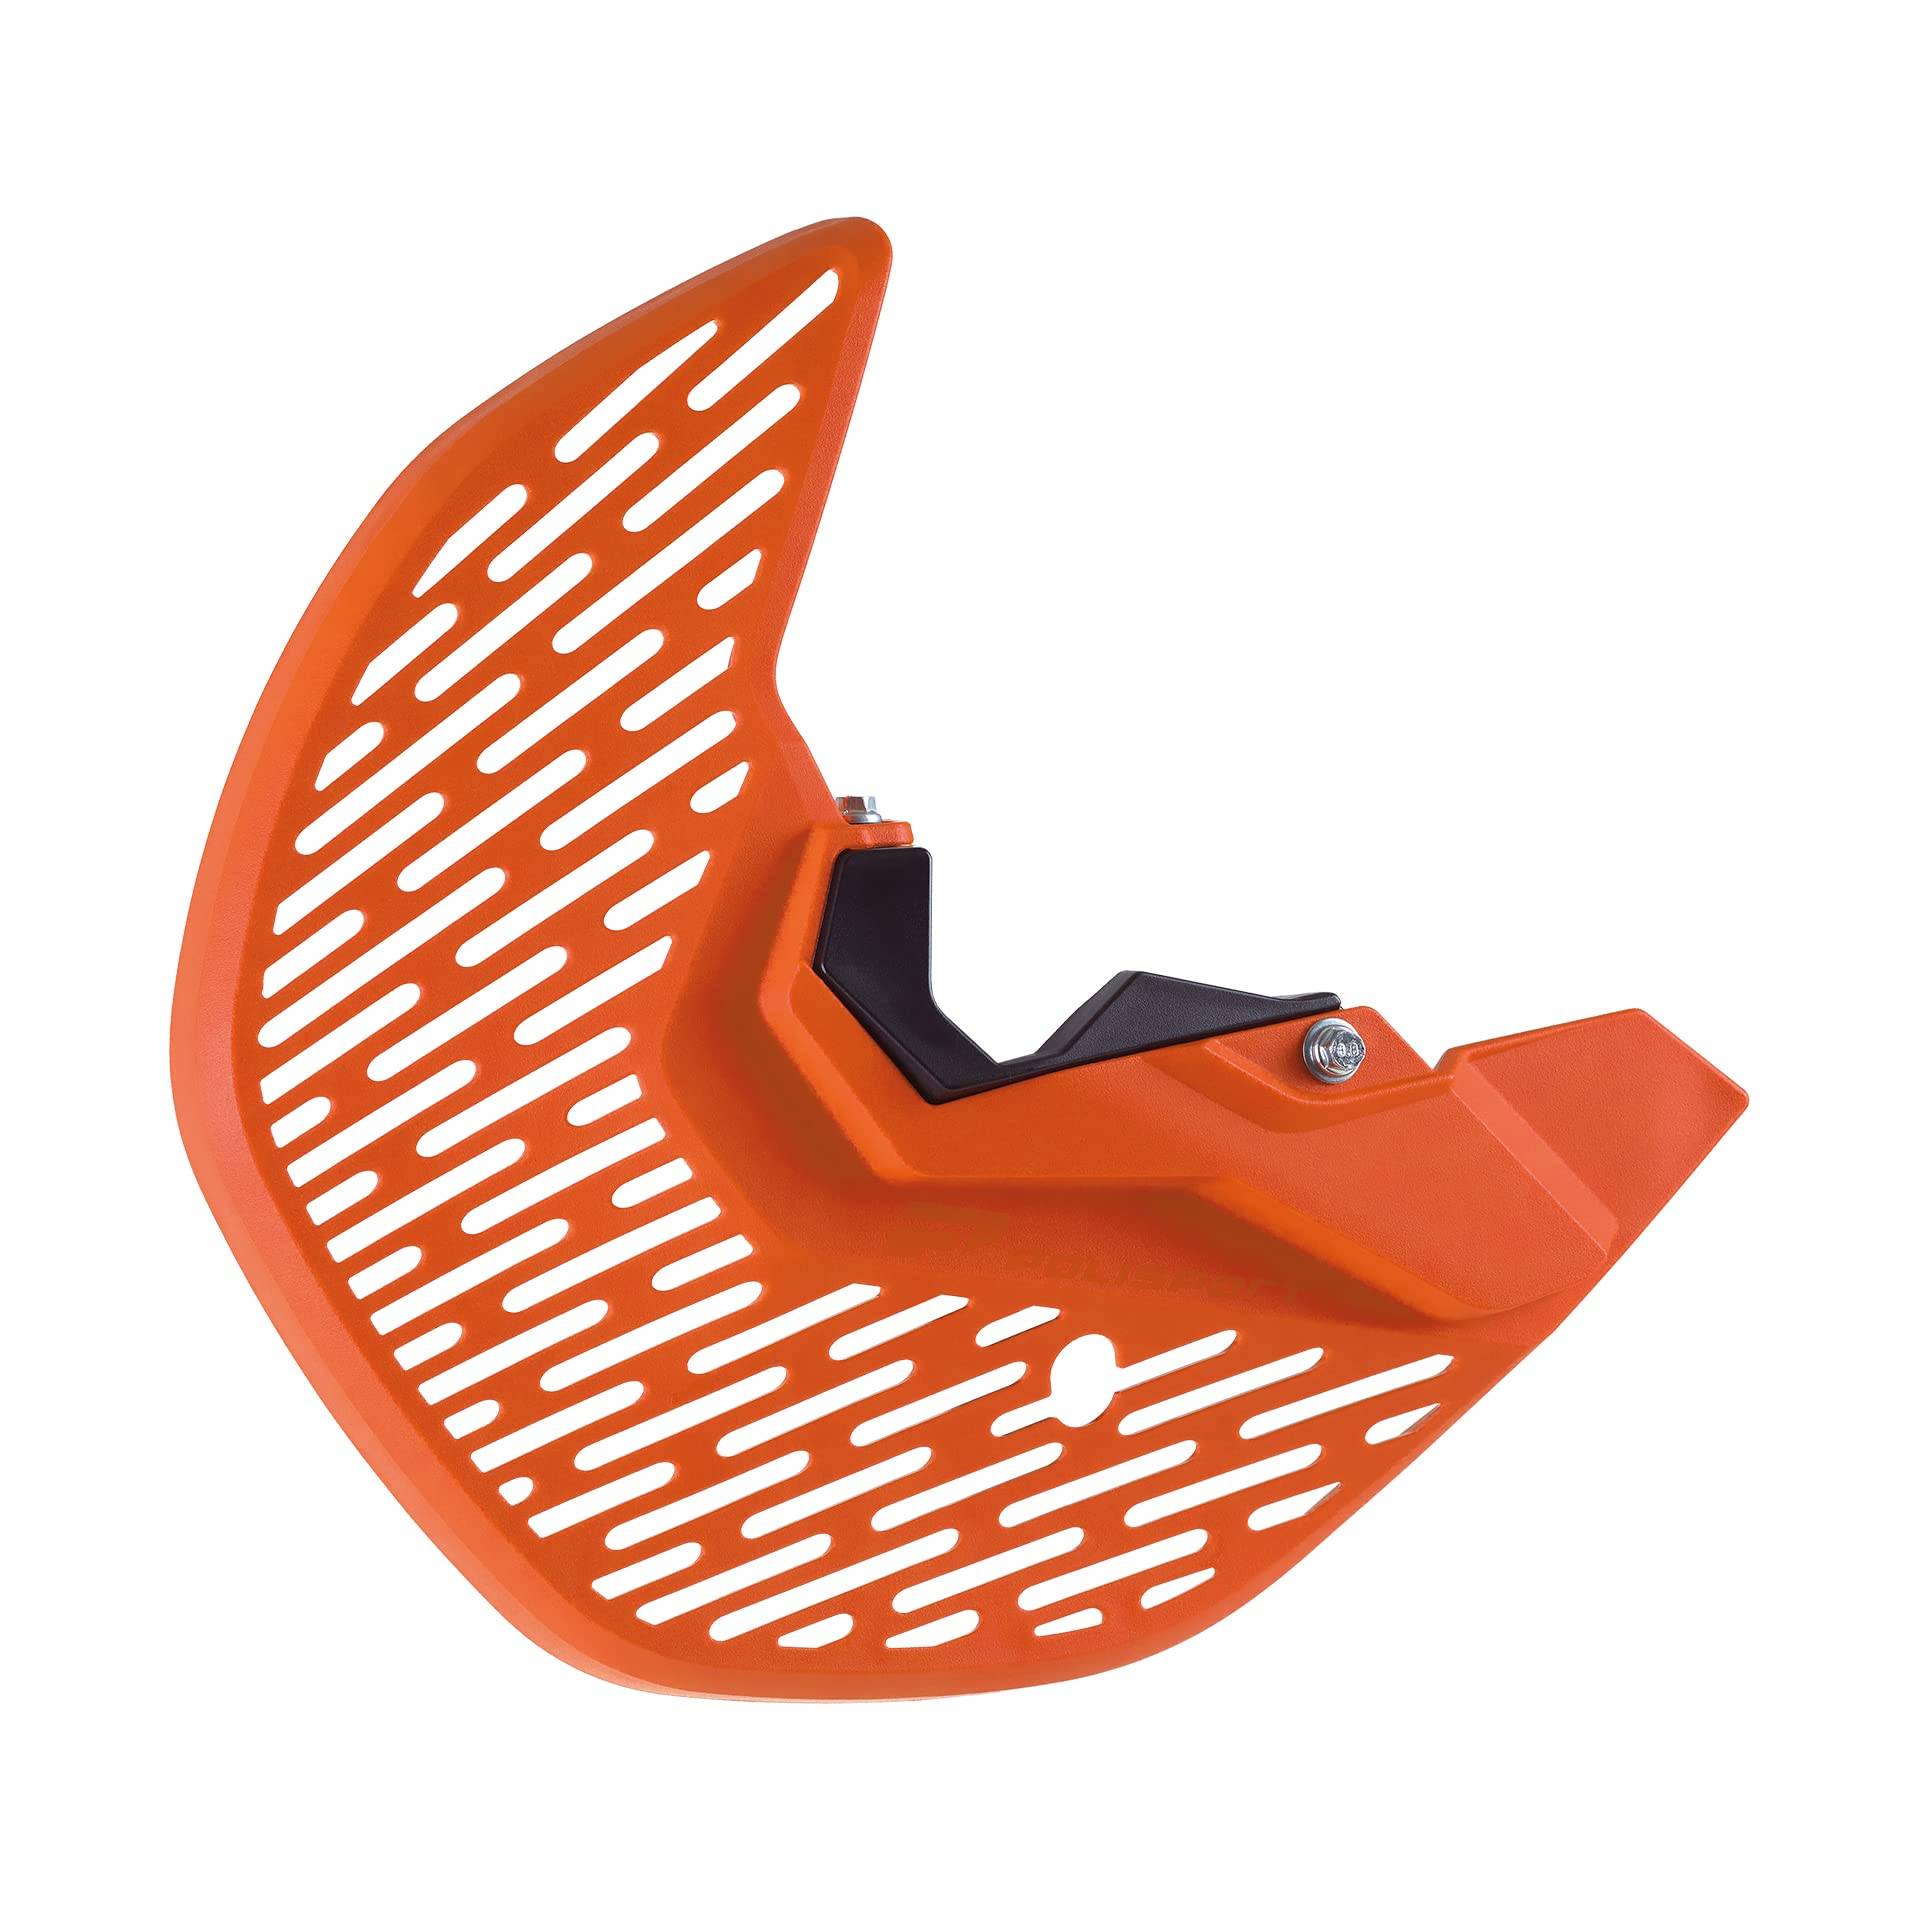 POLISPORT 8158400003 - Untere Gabel und MX-Scheibenschutz aus schlag- und abriebfestem Kunststoff kompatibel mit Motorrädern KTM in Farbe Orange von Polisport